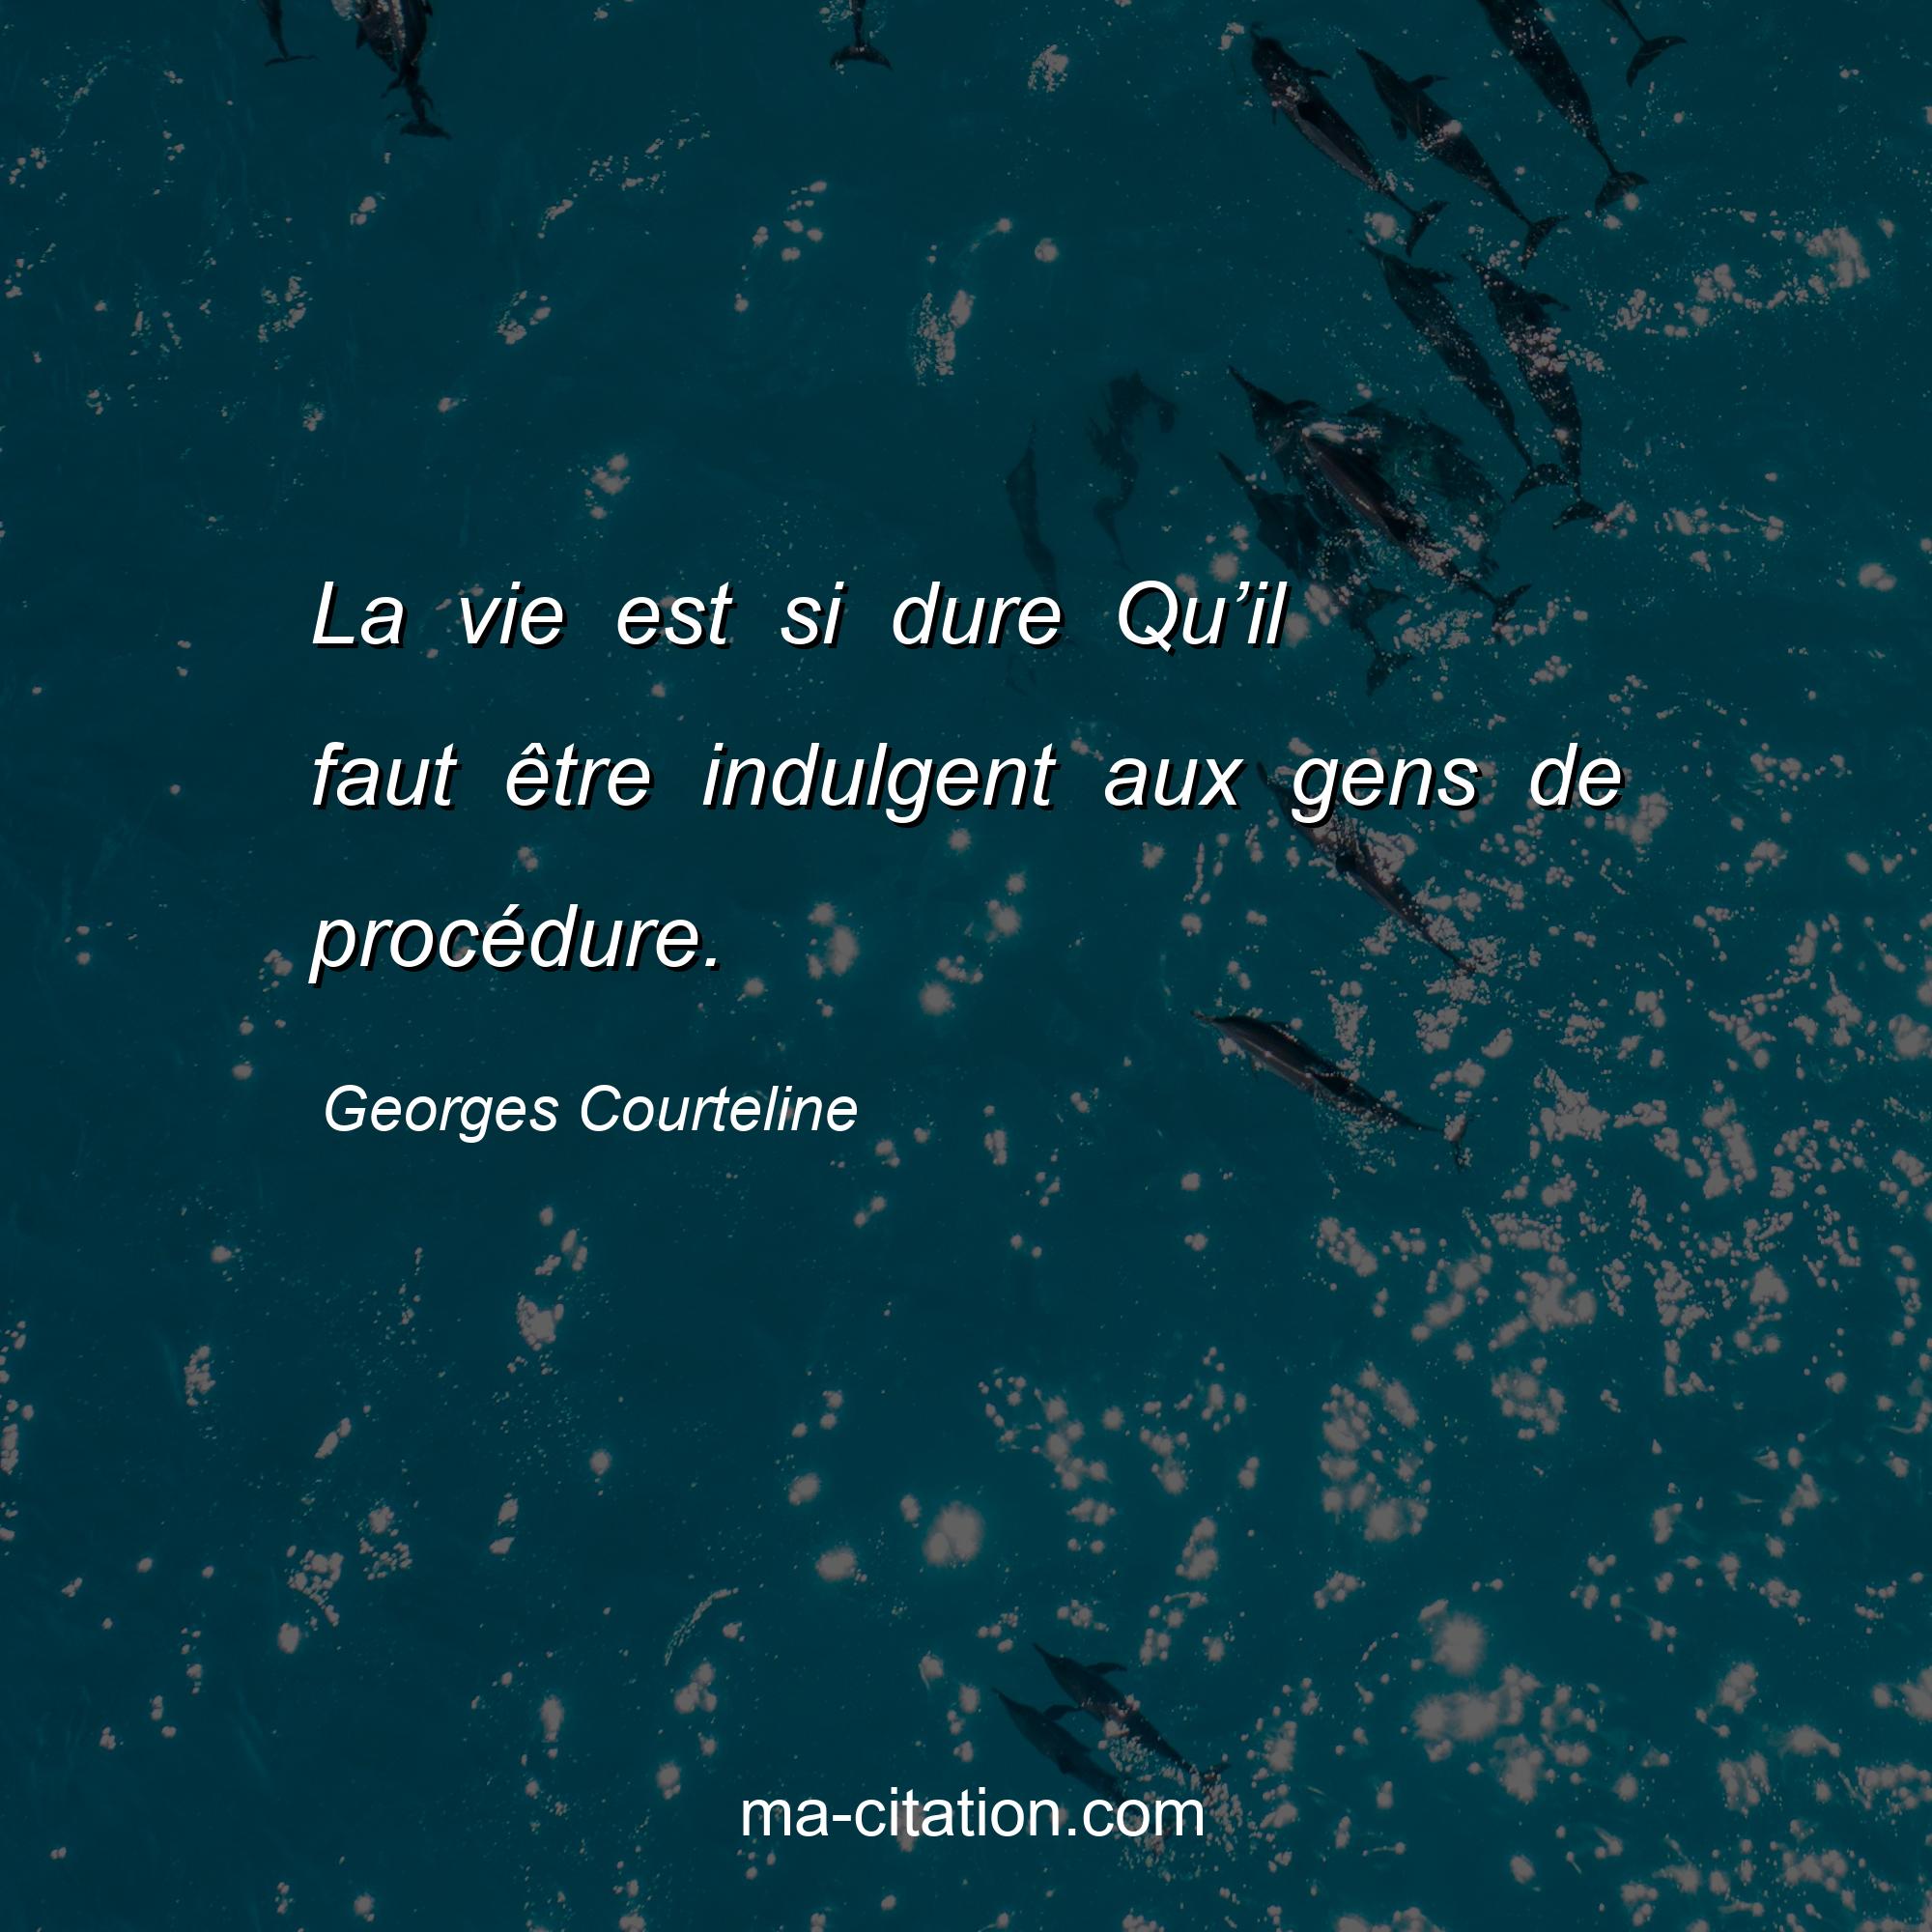 Georges Courteline : La vie est si dure Qu’il faut être indulgent aux gens de procédure.